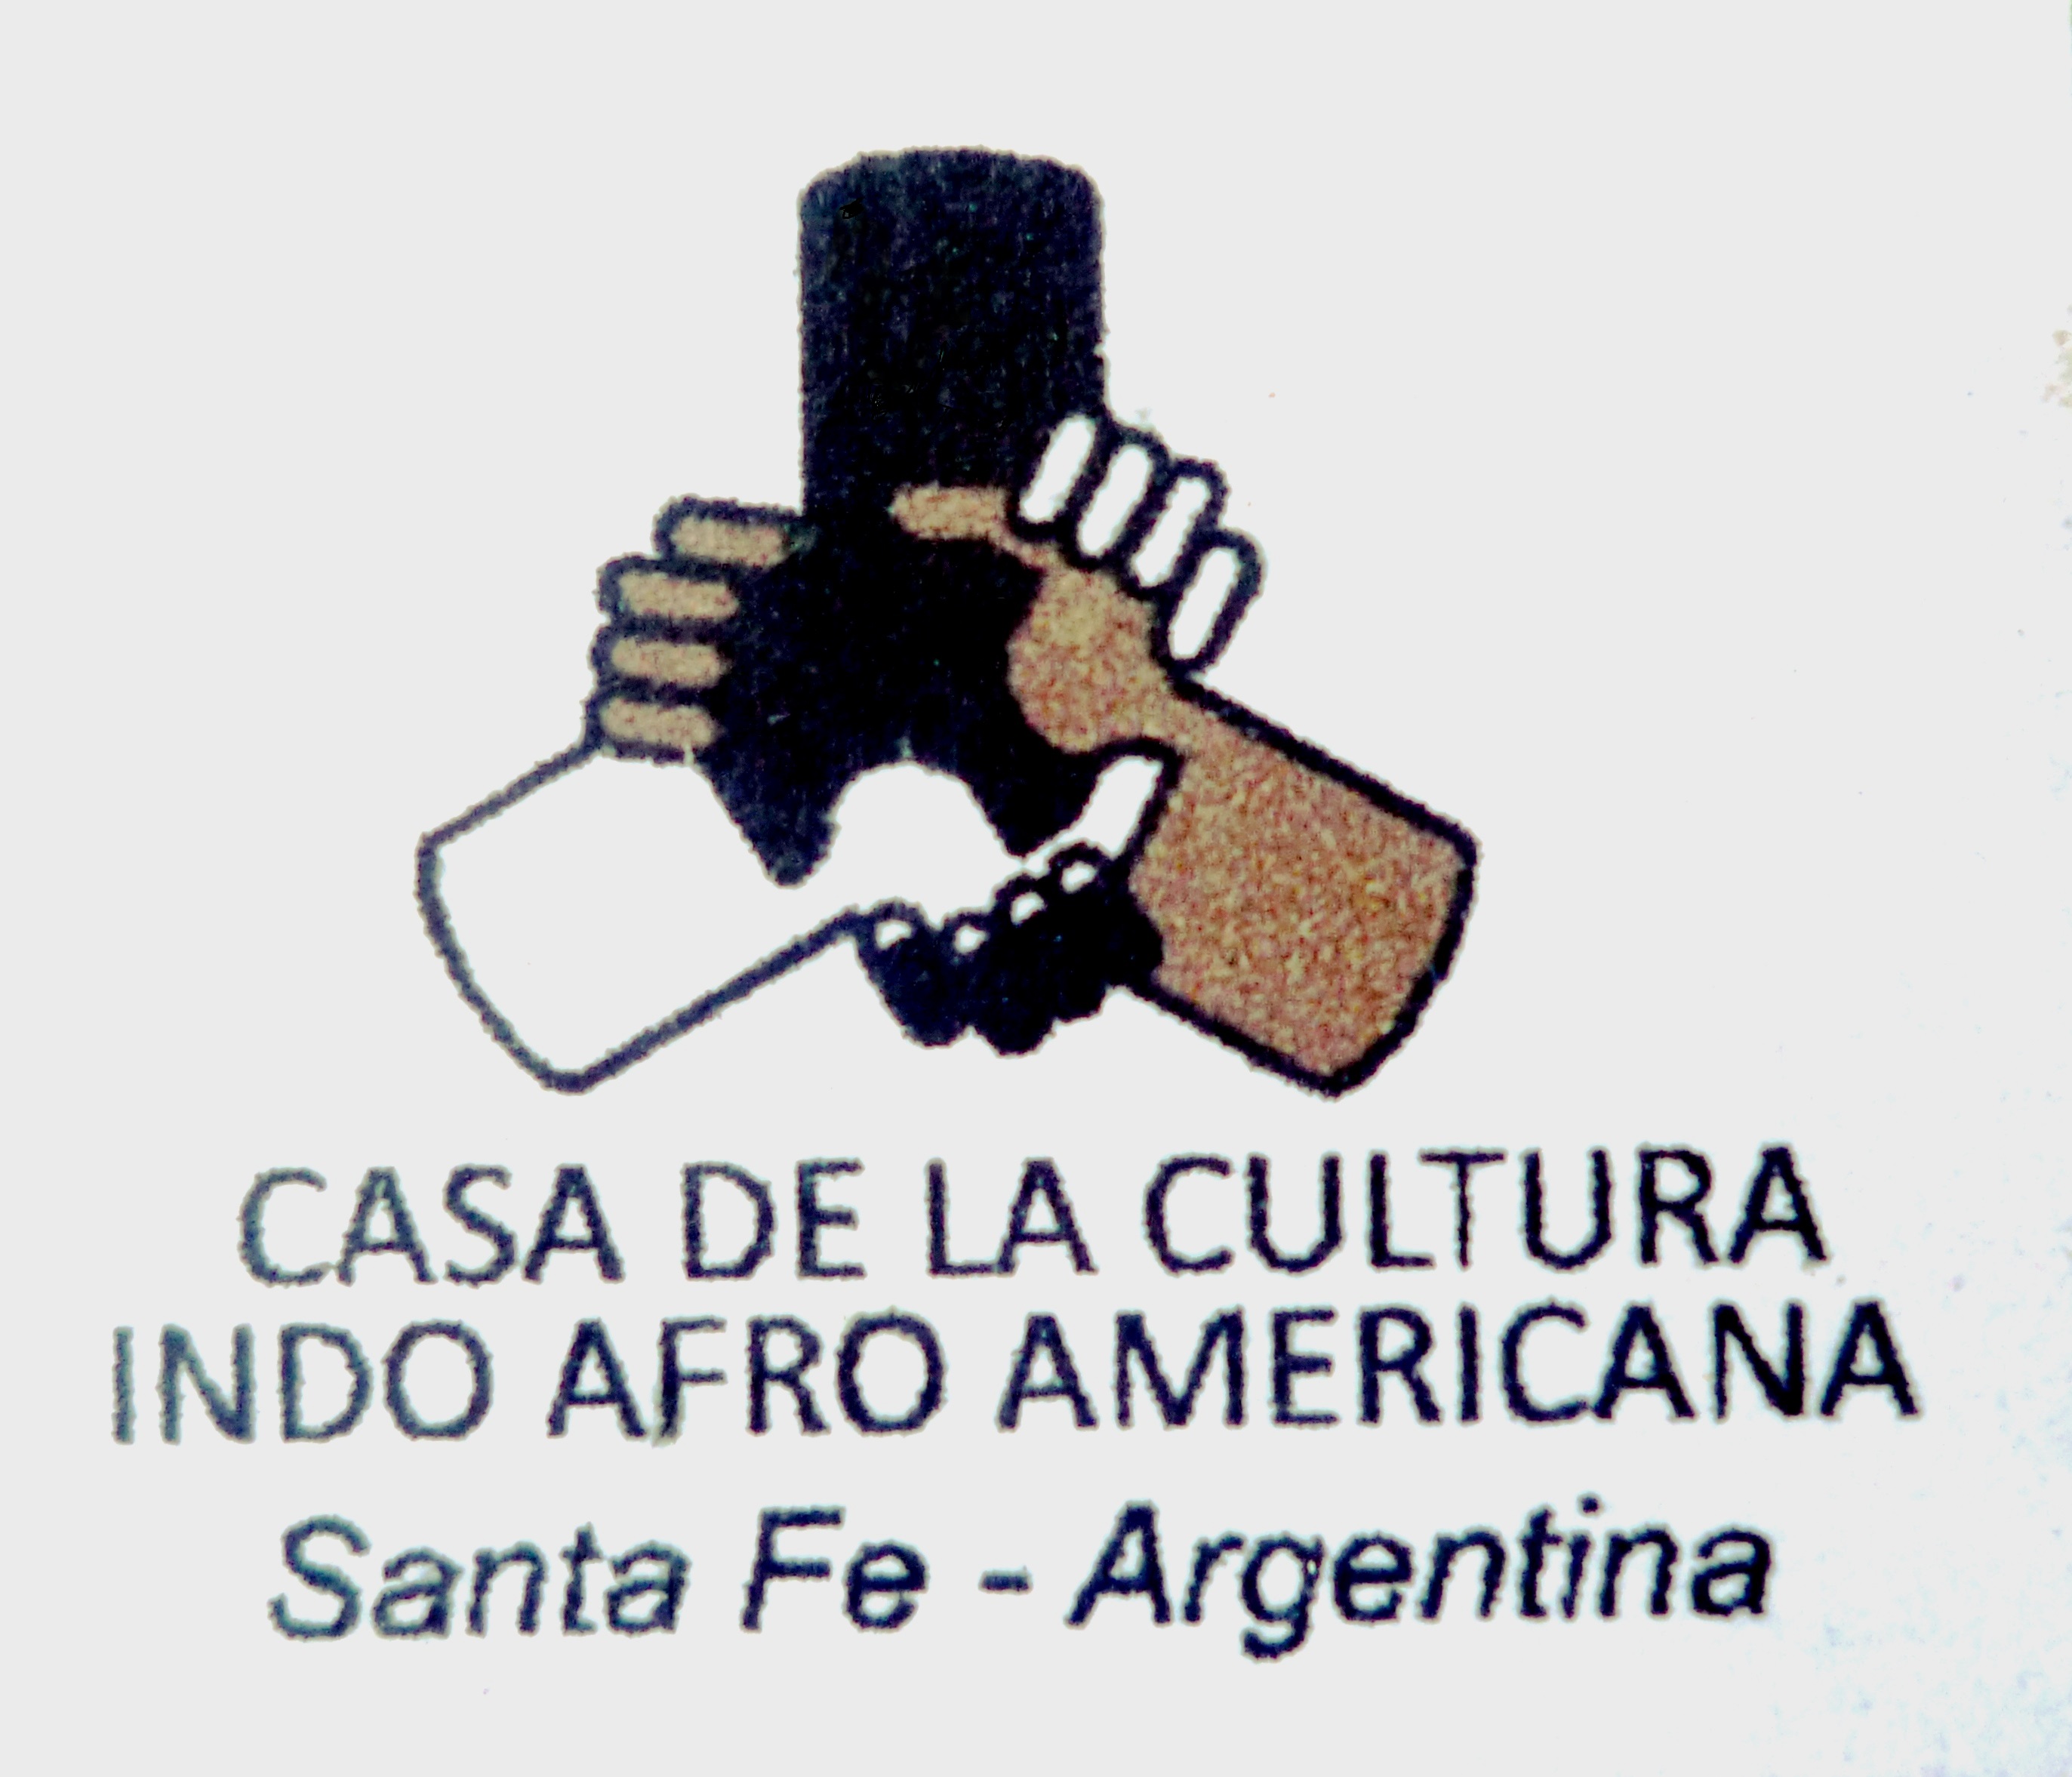 Casa de la Cultura Indo-Afro-Americana “Mario Luis López” . Logo. 